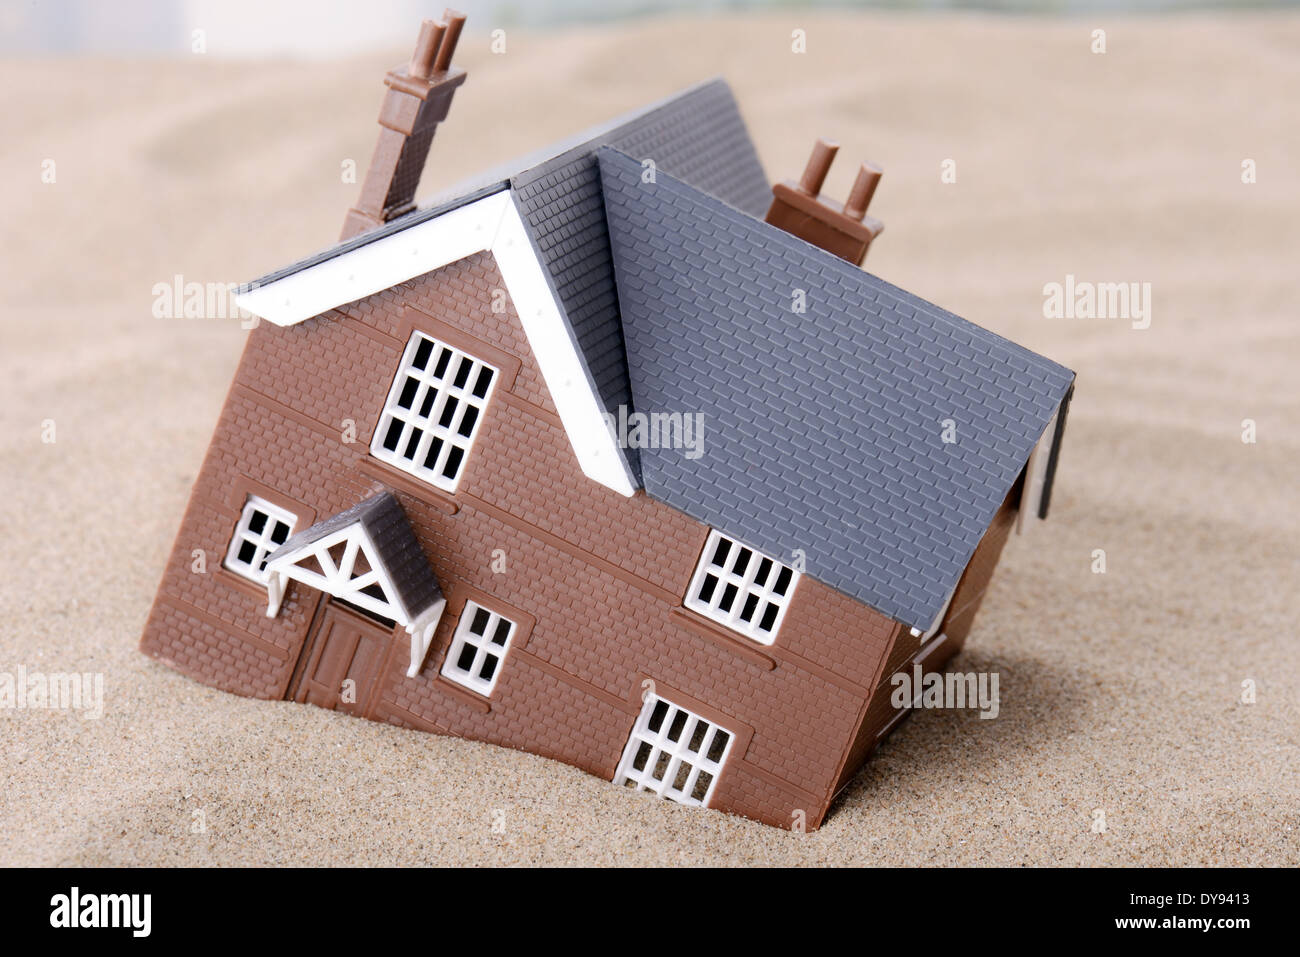 Une maison s'enfoncer dans le sable, concept pour les problèmes de logement Banque D'Images